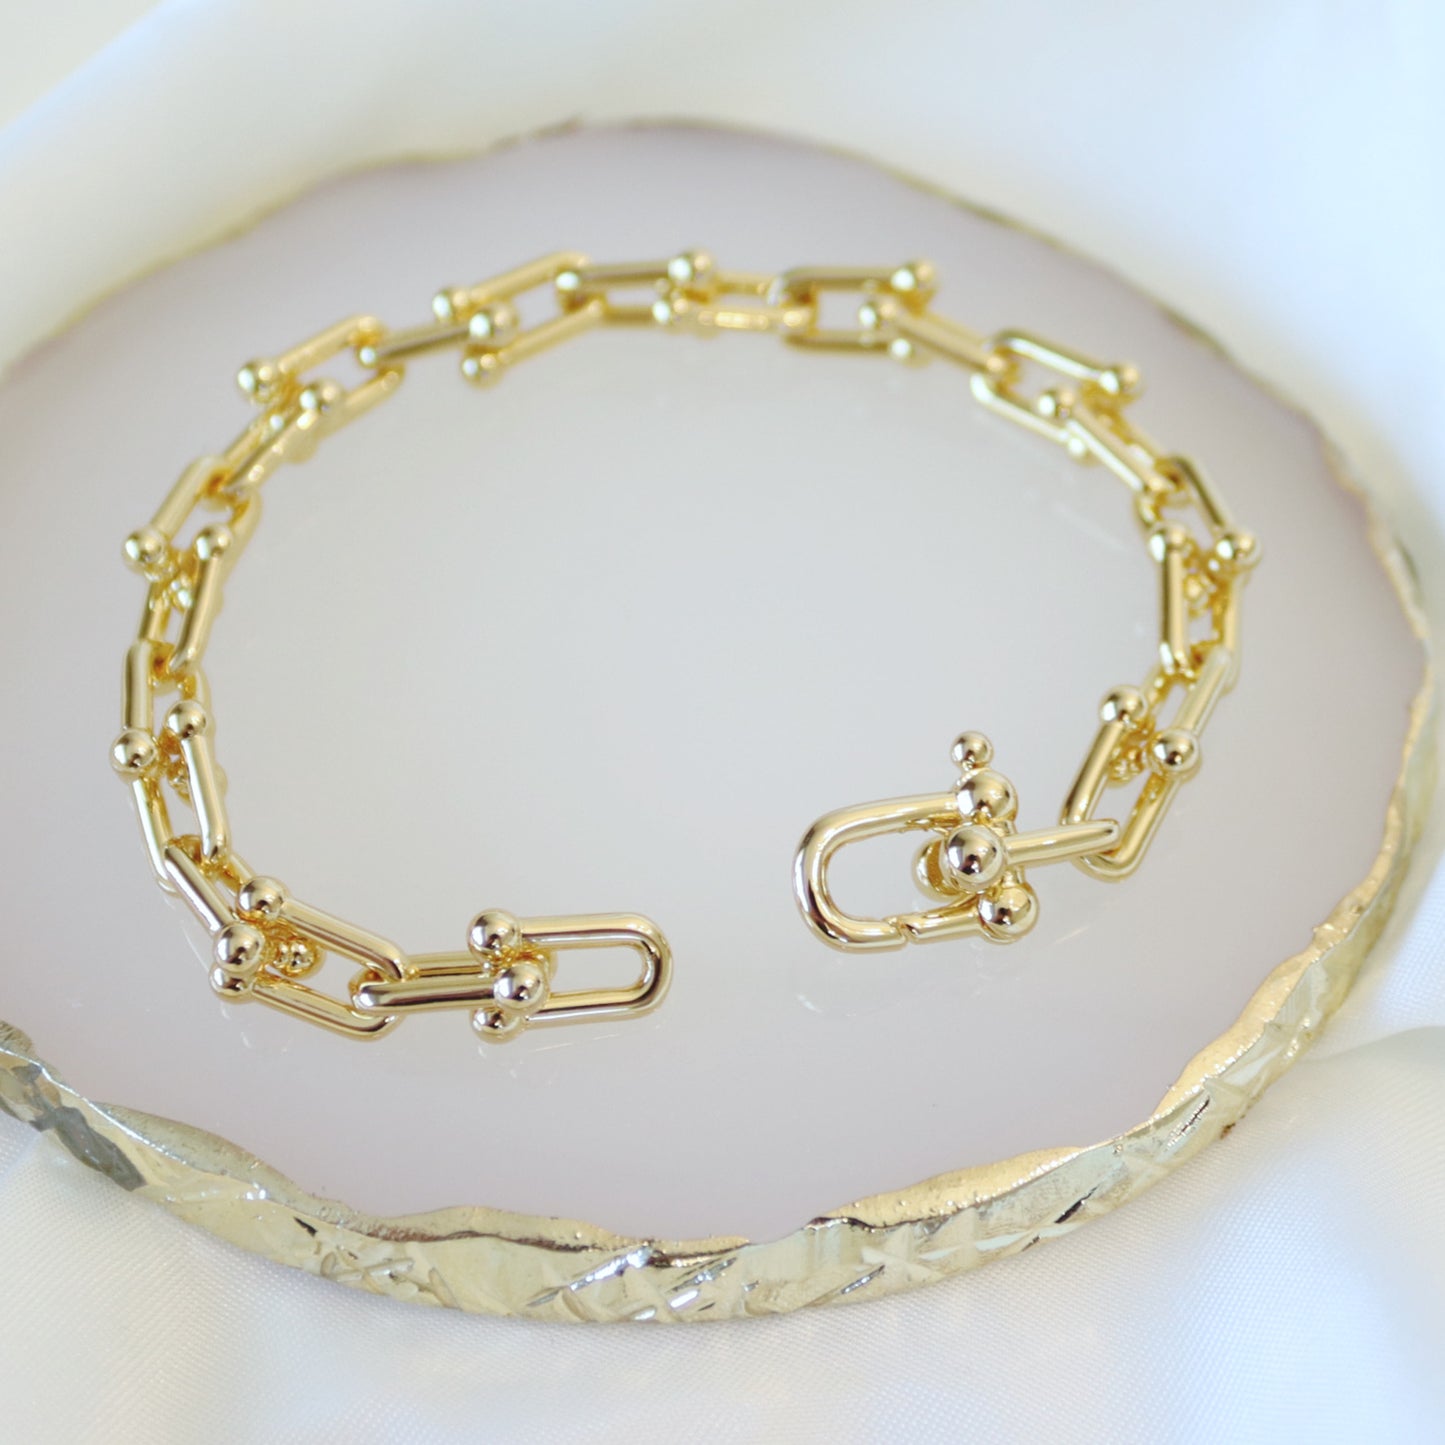 Interlocking Tiff Design Bracelet - Kalopsia Accessories